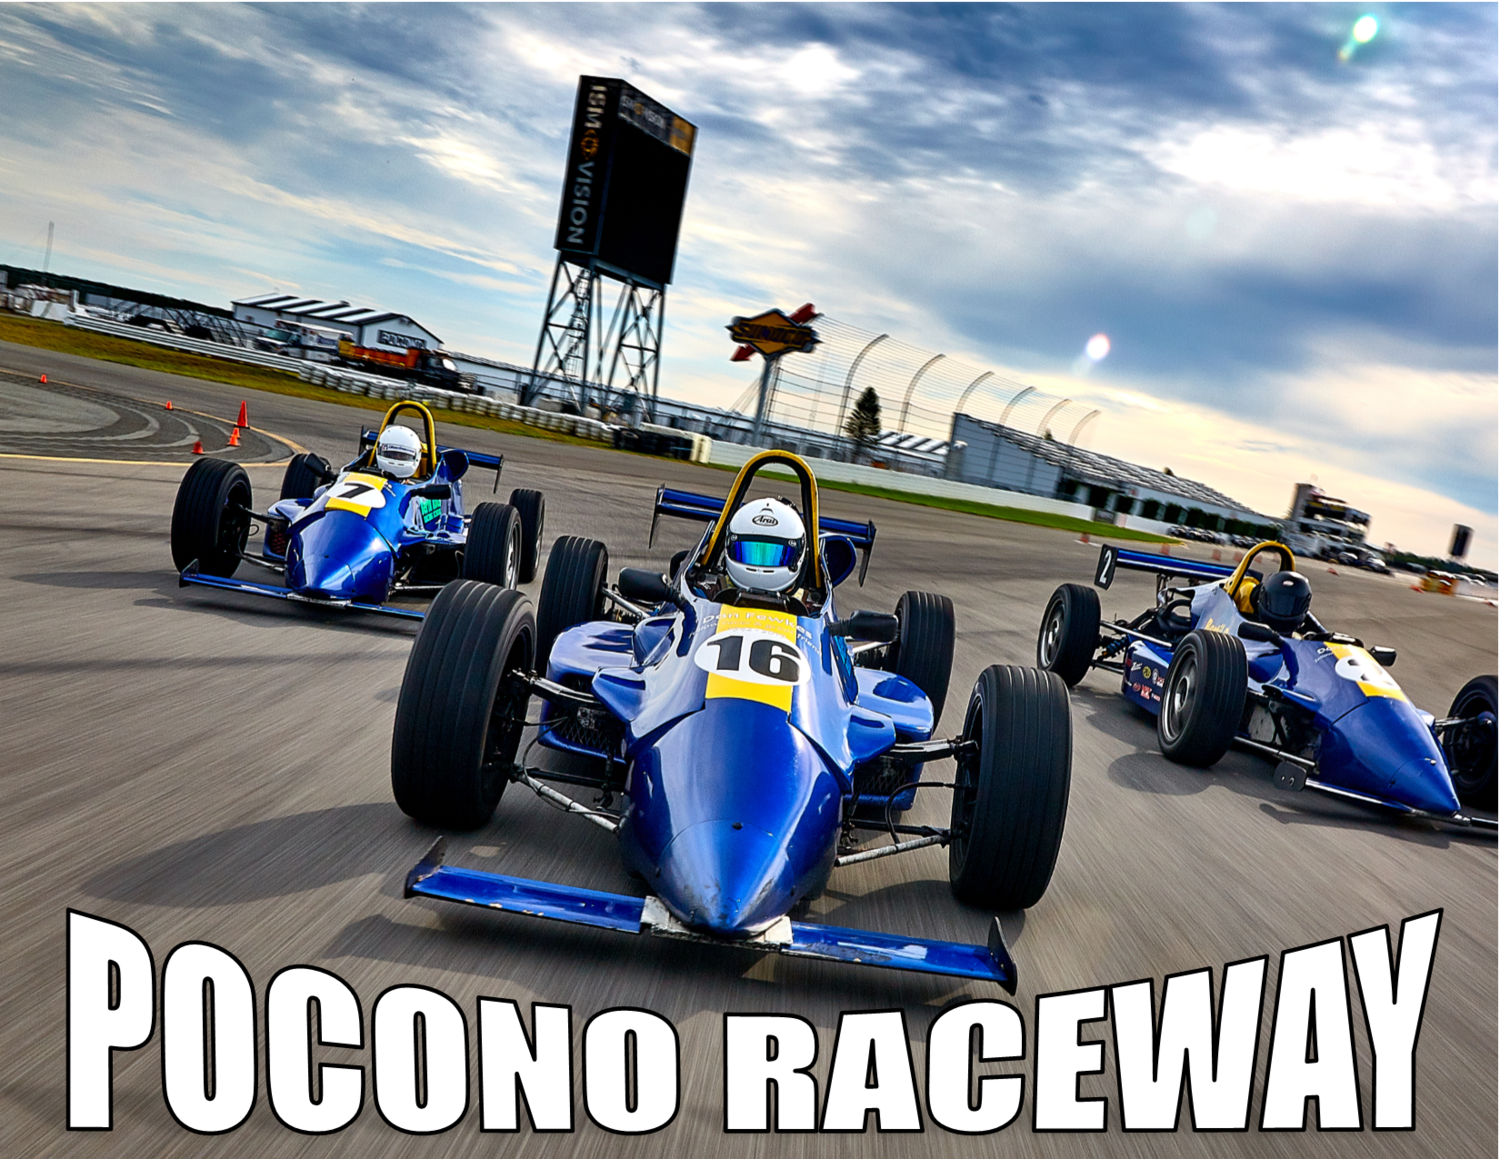 Pocono Raceway - 3 Day Road Racing School